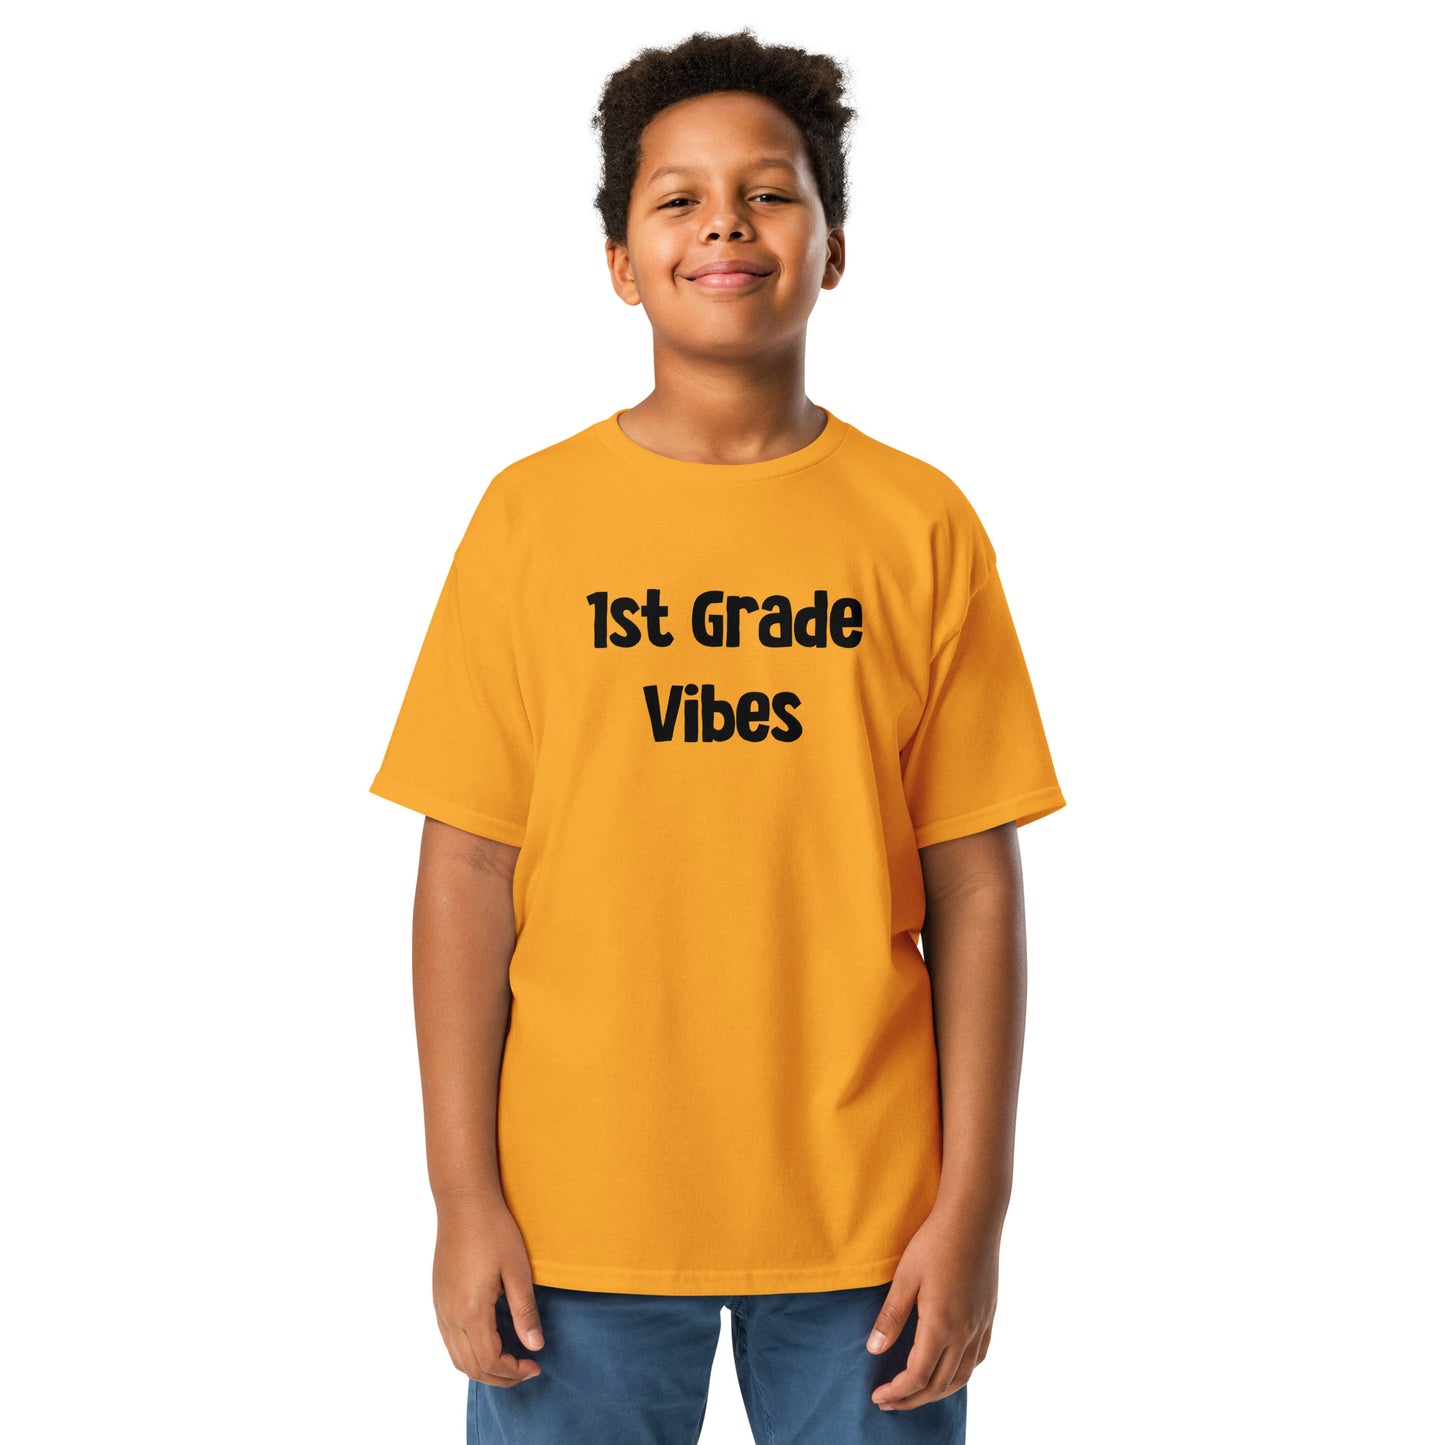 Kids 1st Grade Vibes T Shirt